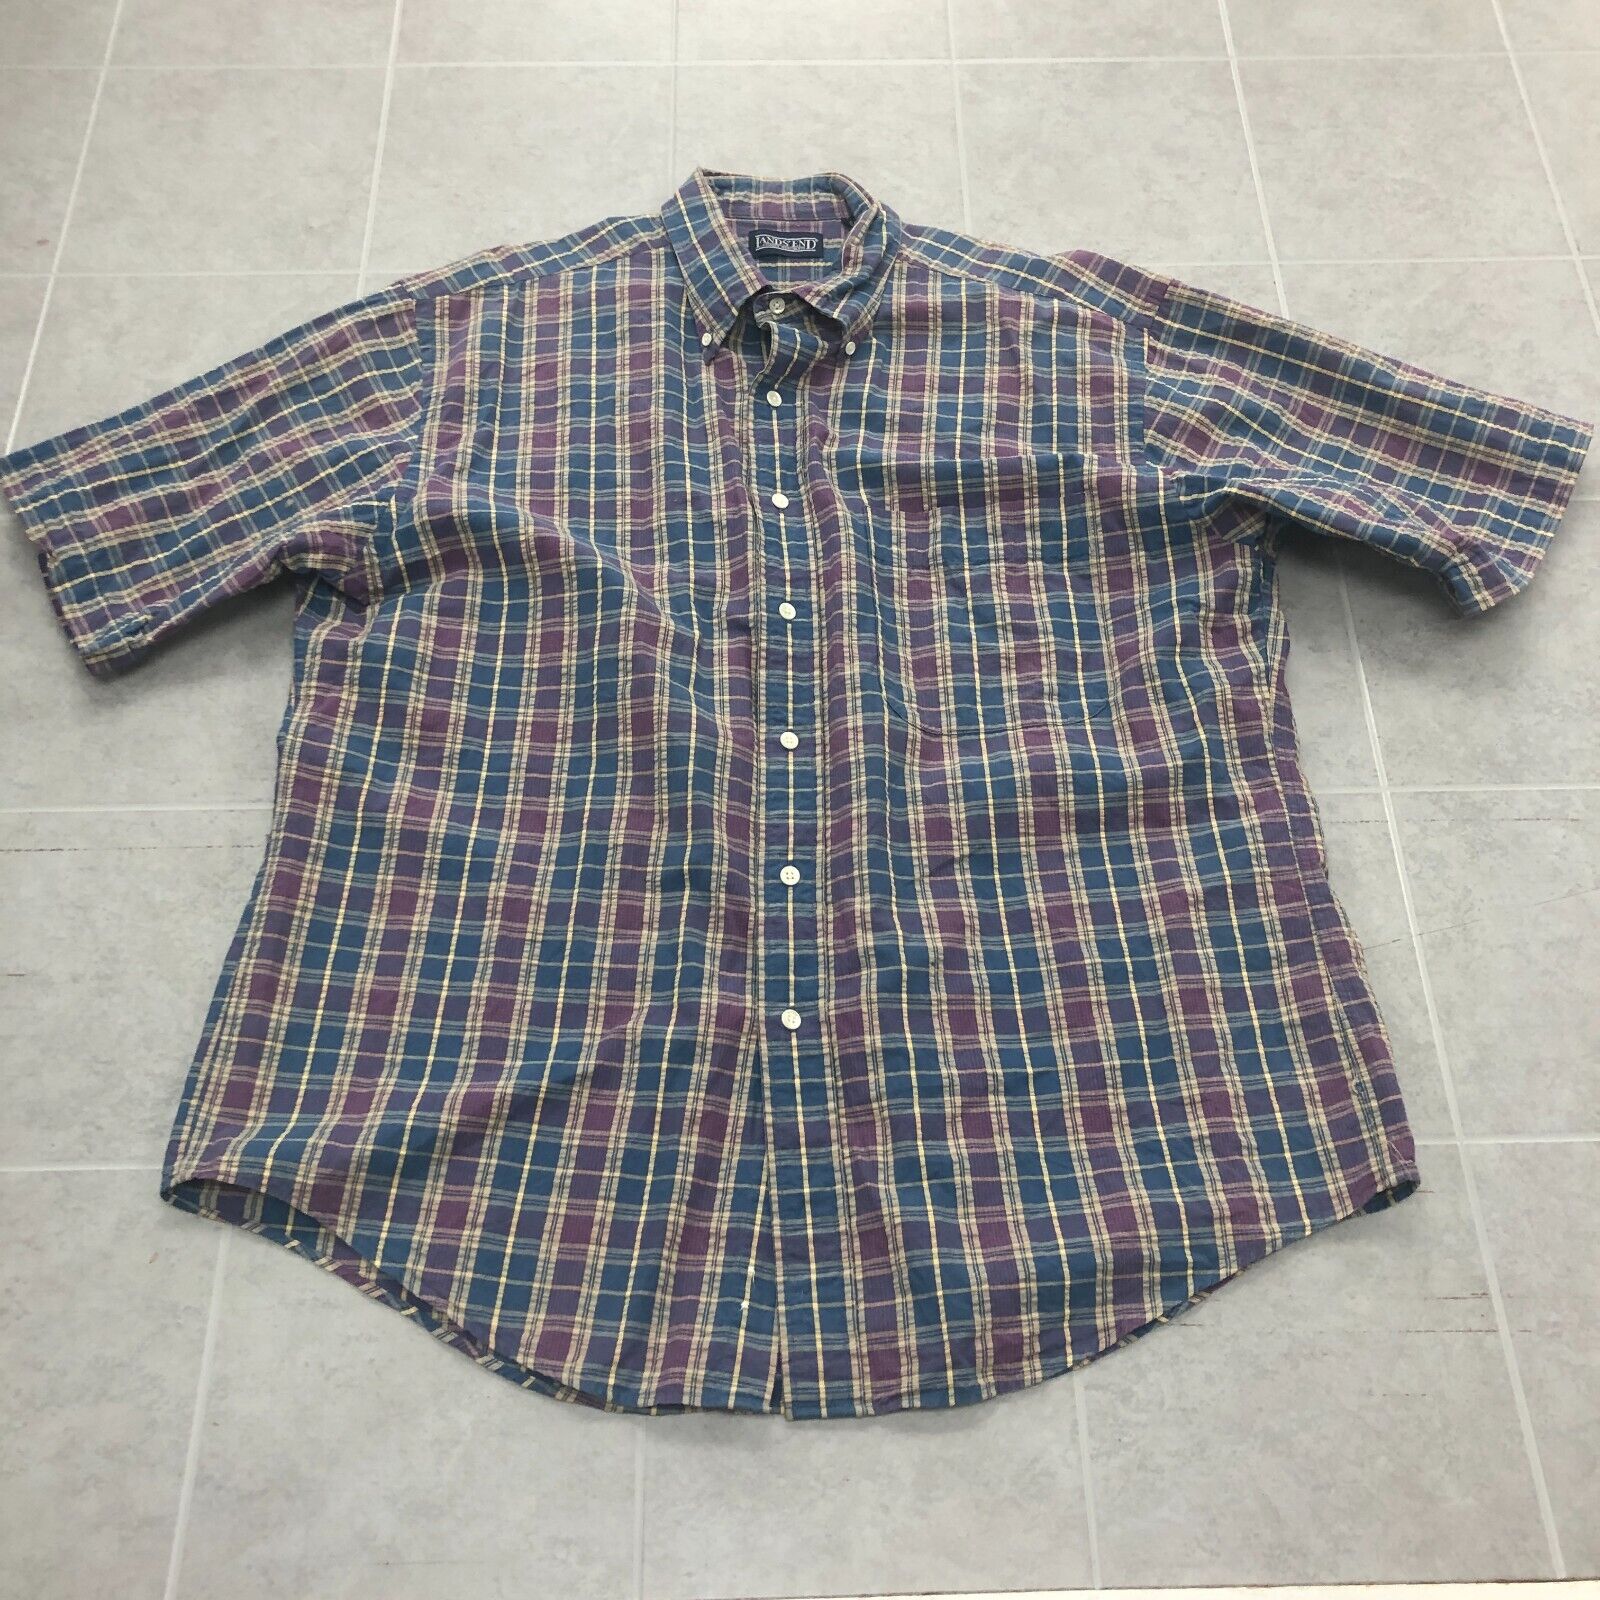 Vintage Lands End Blue Plaid Short Sleeve Casual Button Up Shirt Adult Size L